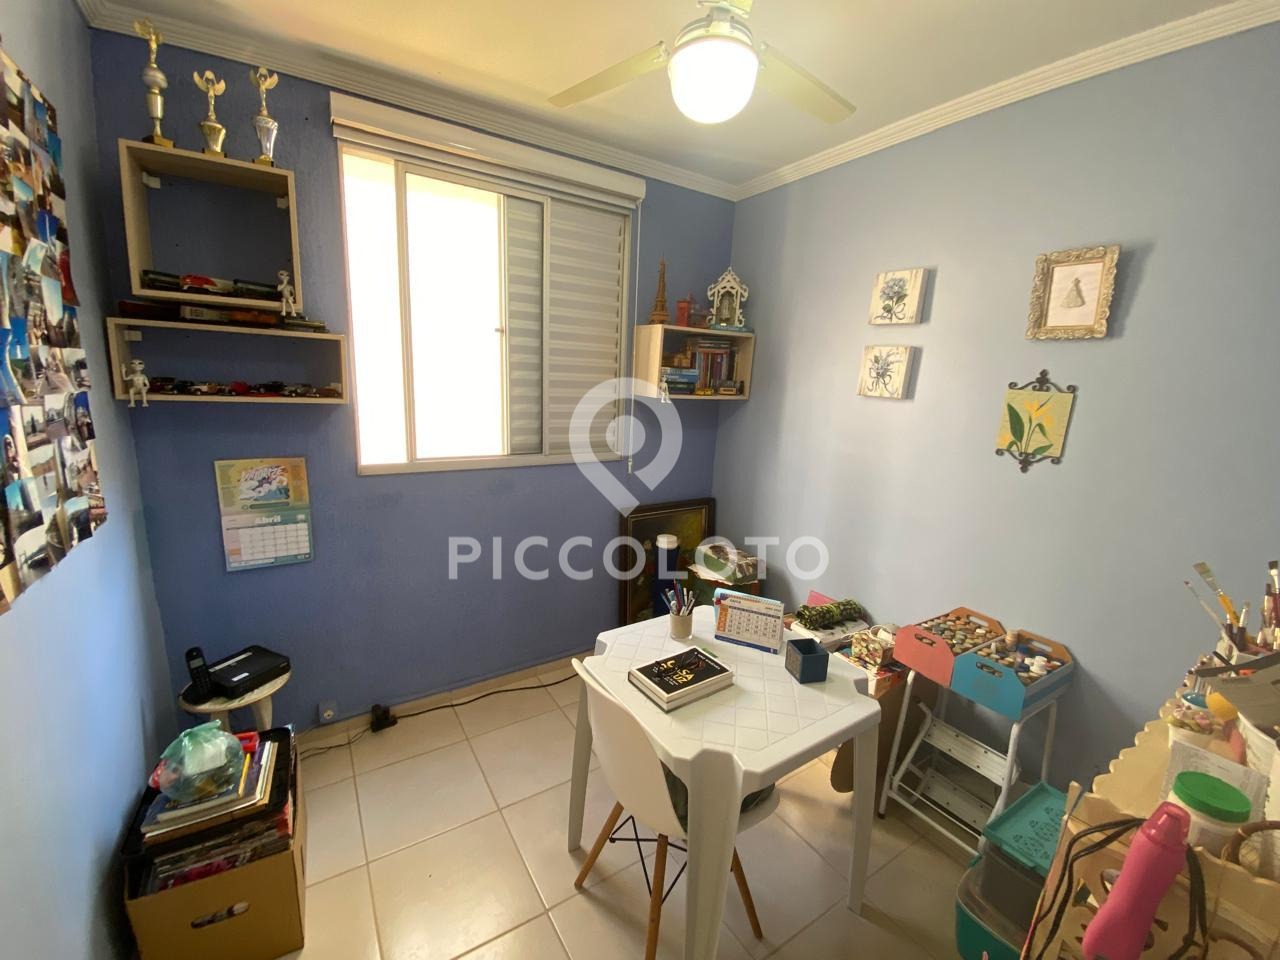 Piccoloto -Apartamento à venda no Mansões Santo Antônio em Campinas